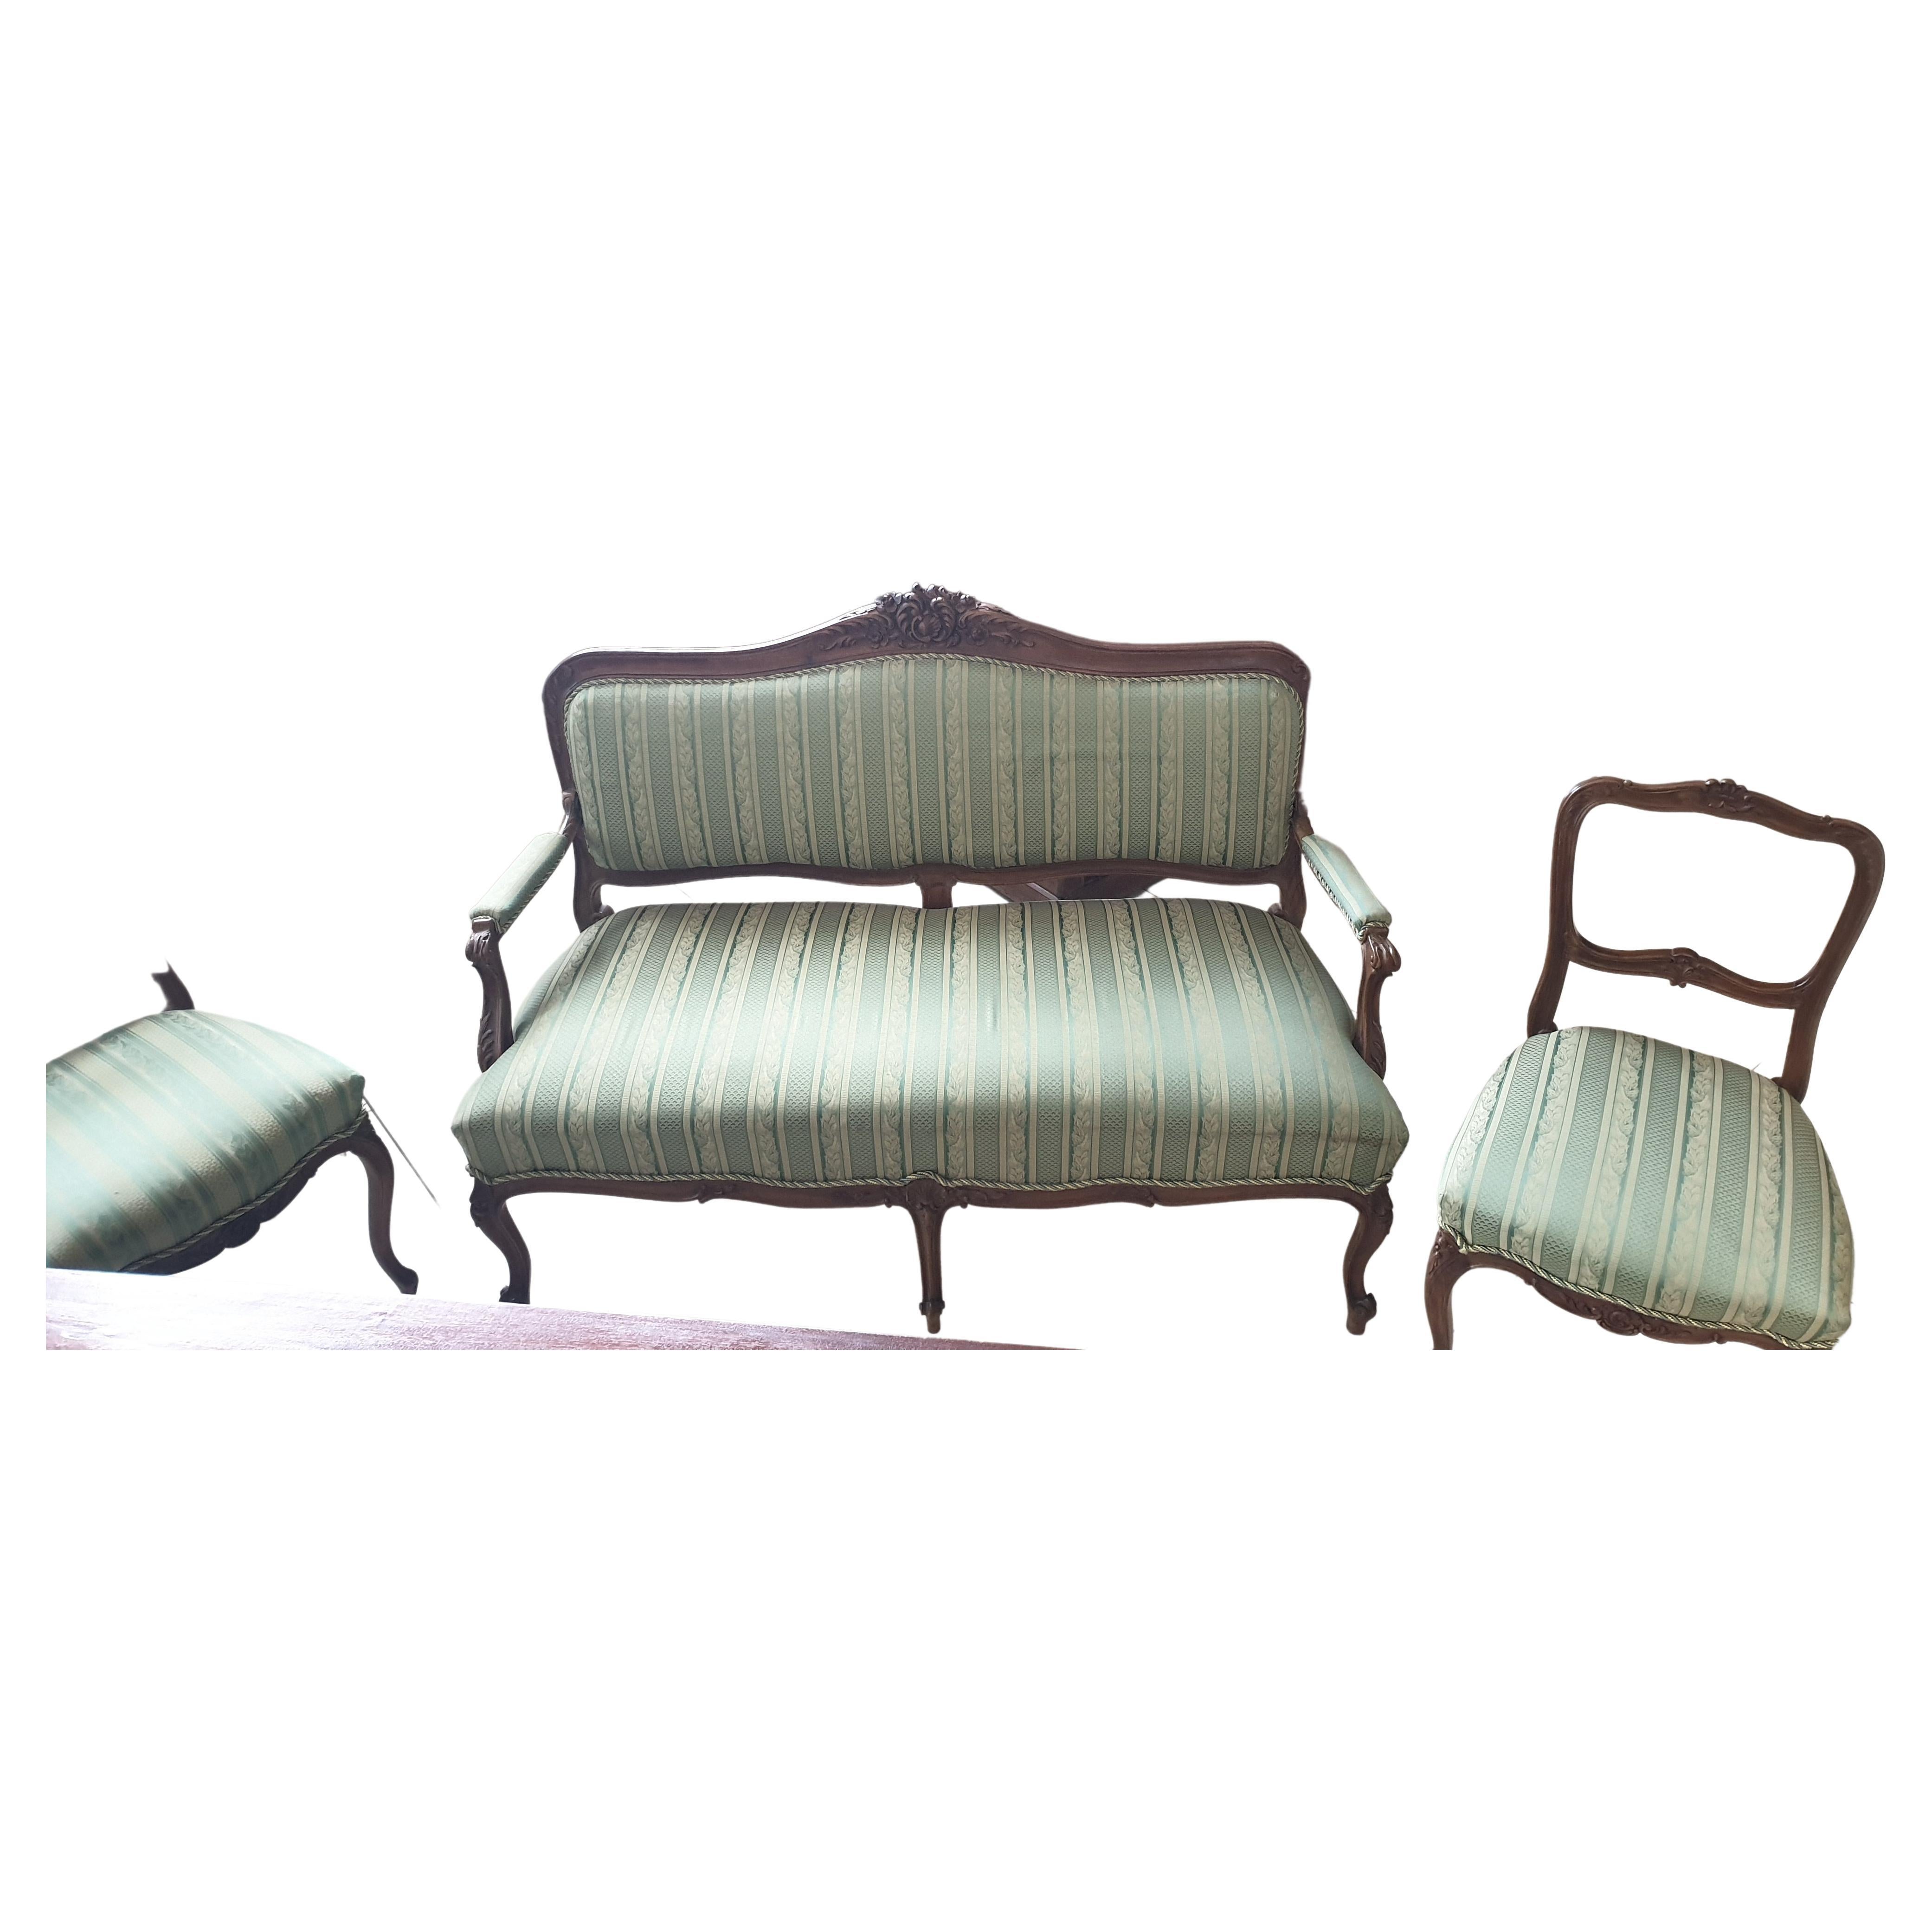 Bemutatjuk Önnek ezt a különleges szalon garnitúra ( 1 db. 2 személyes sofa + 2 székek ) , neo barokk  stílusban.
Les droits de l'homme et les droits de l'homme dans le monde  állapotban van. 
Az textil anyag tiszta, rögtön használható a